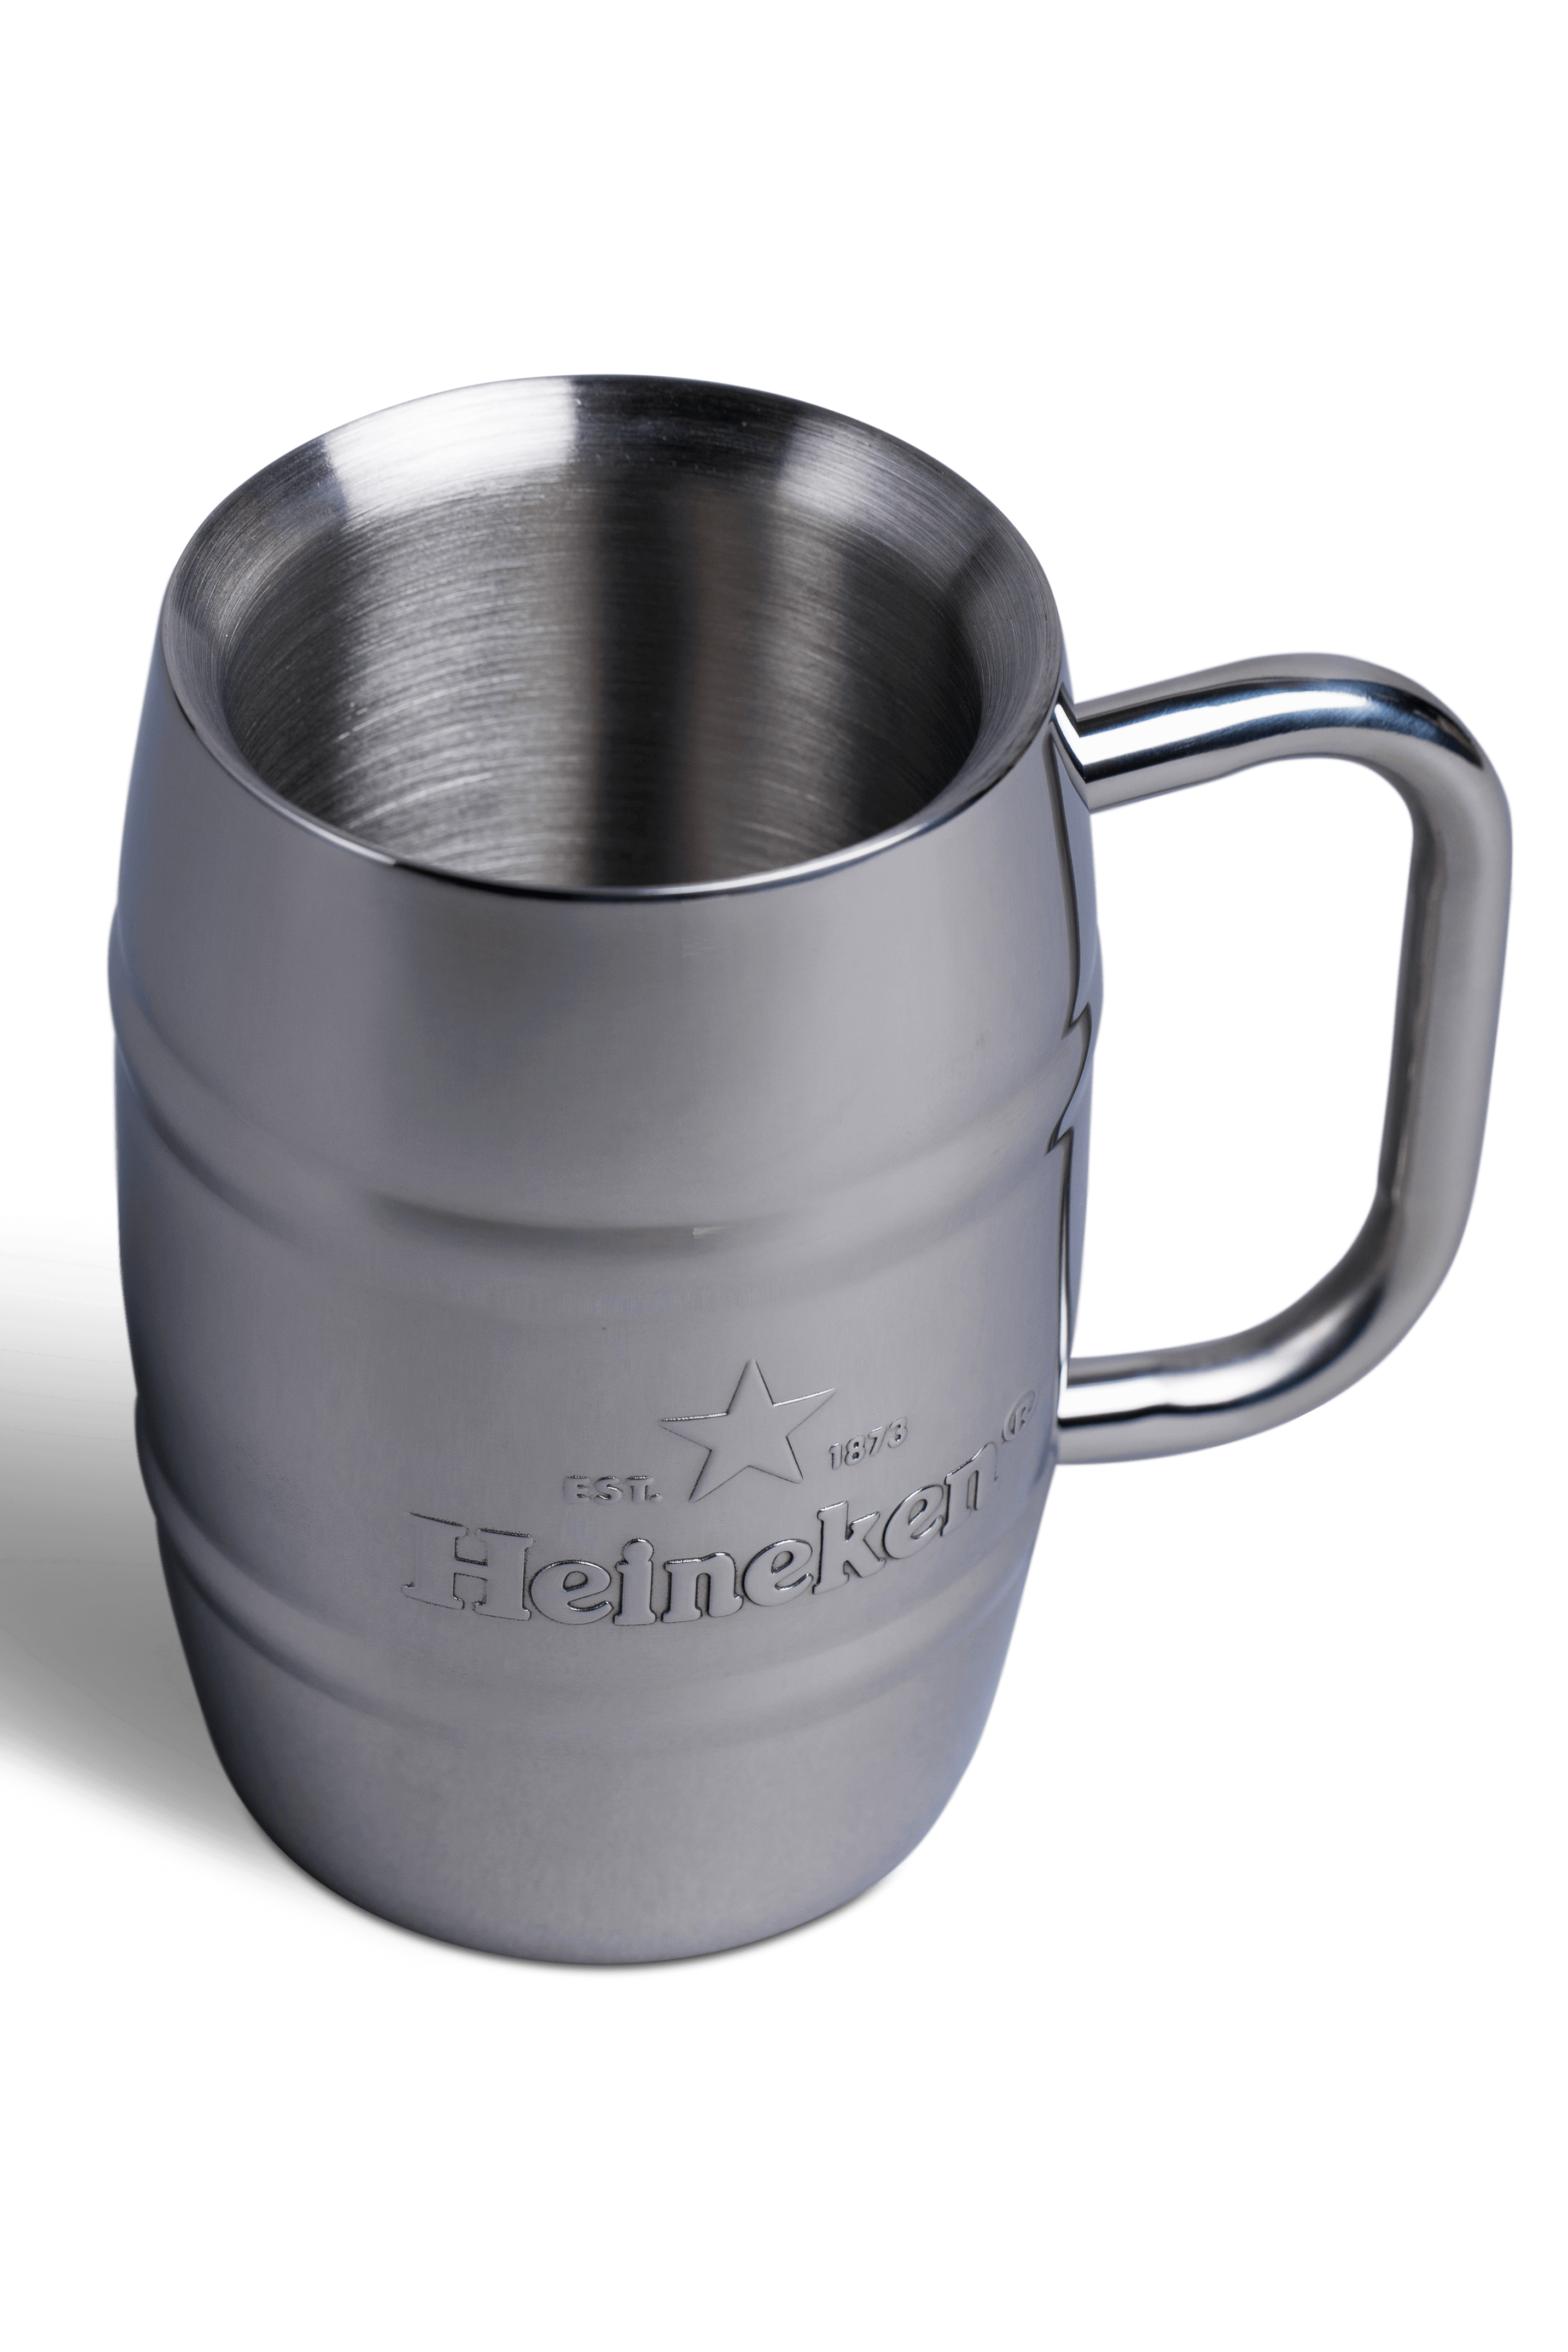 Heineken ® Mug Stainless Steel
